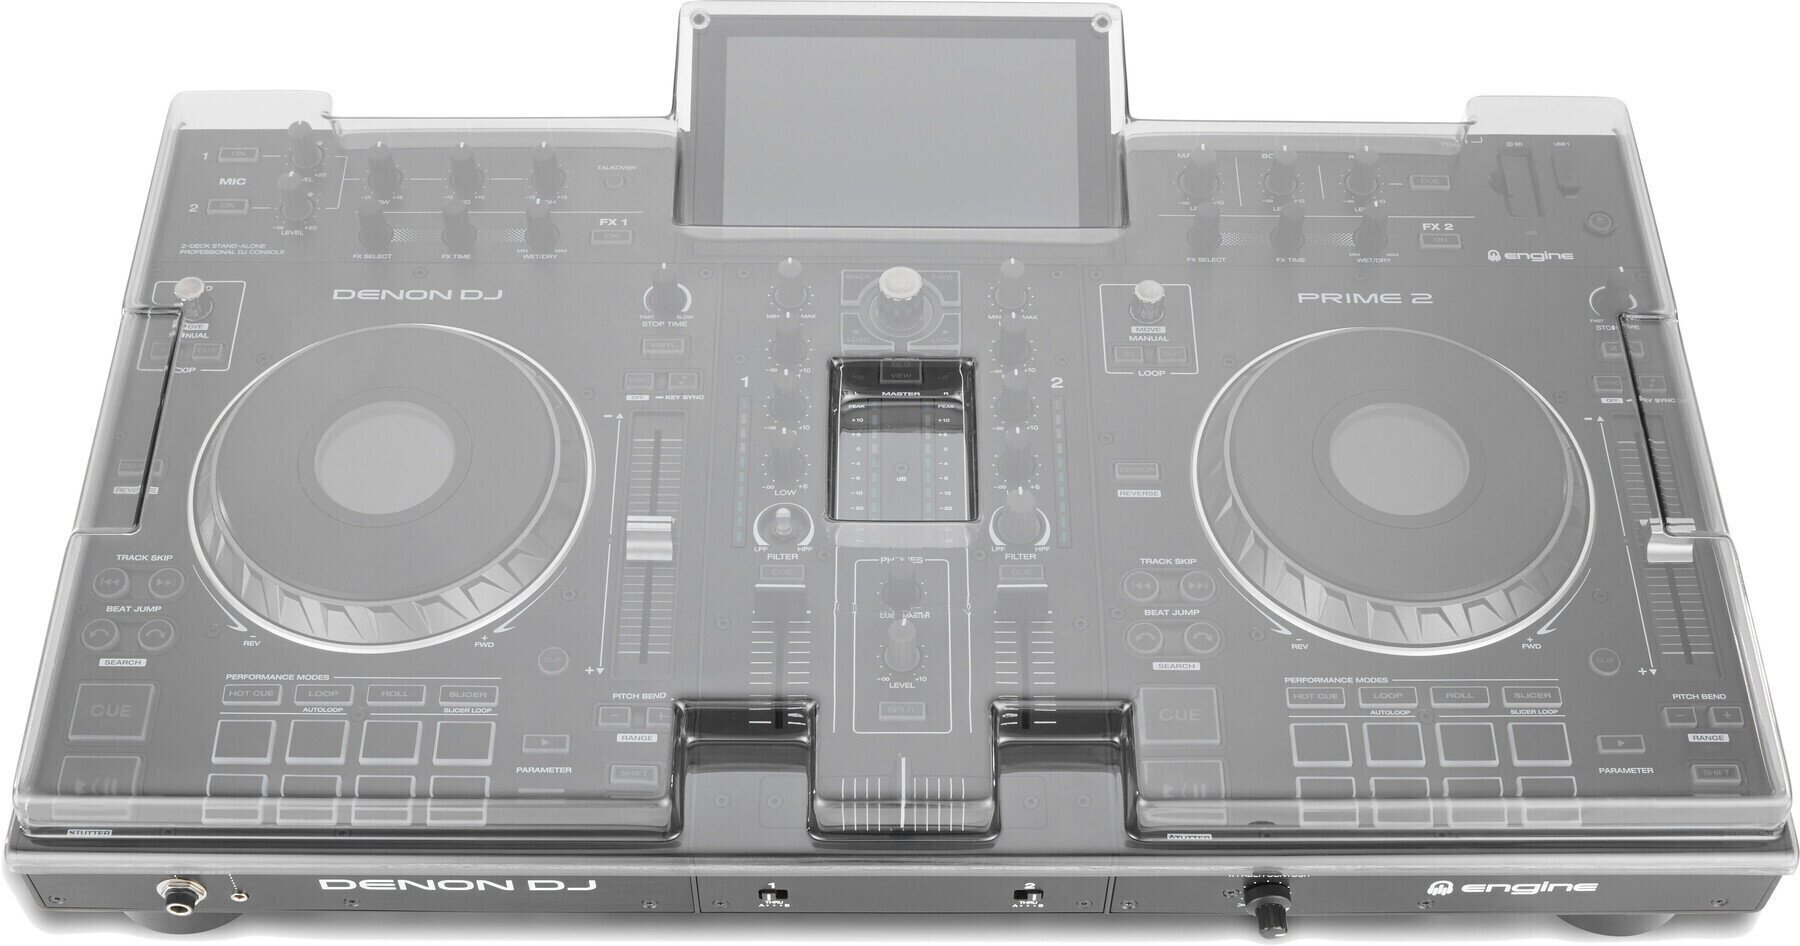 Ochranný kryt pre DJ kontroler Decksaver Denon DJ Prime 2